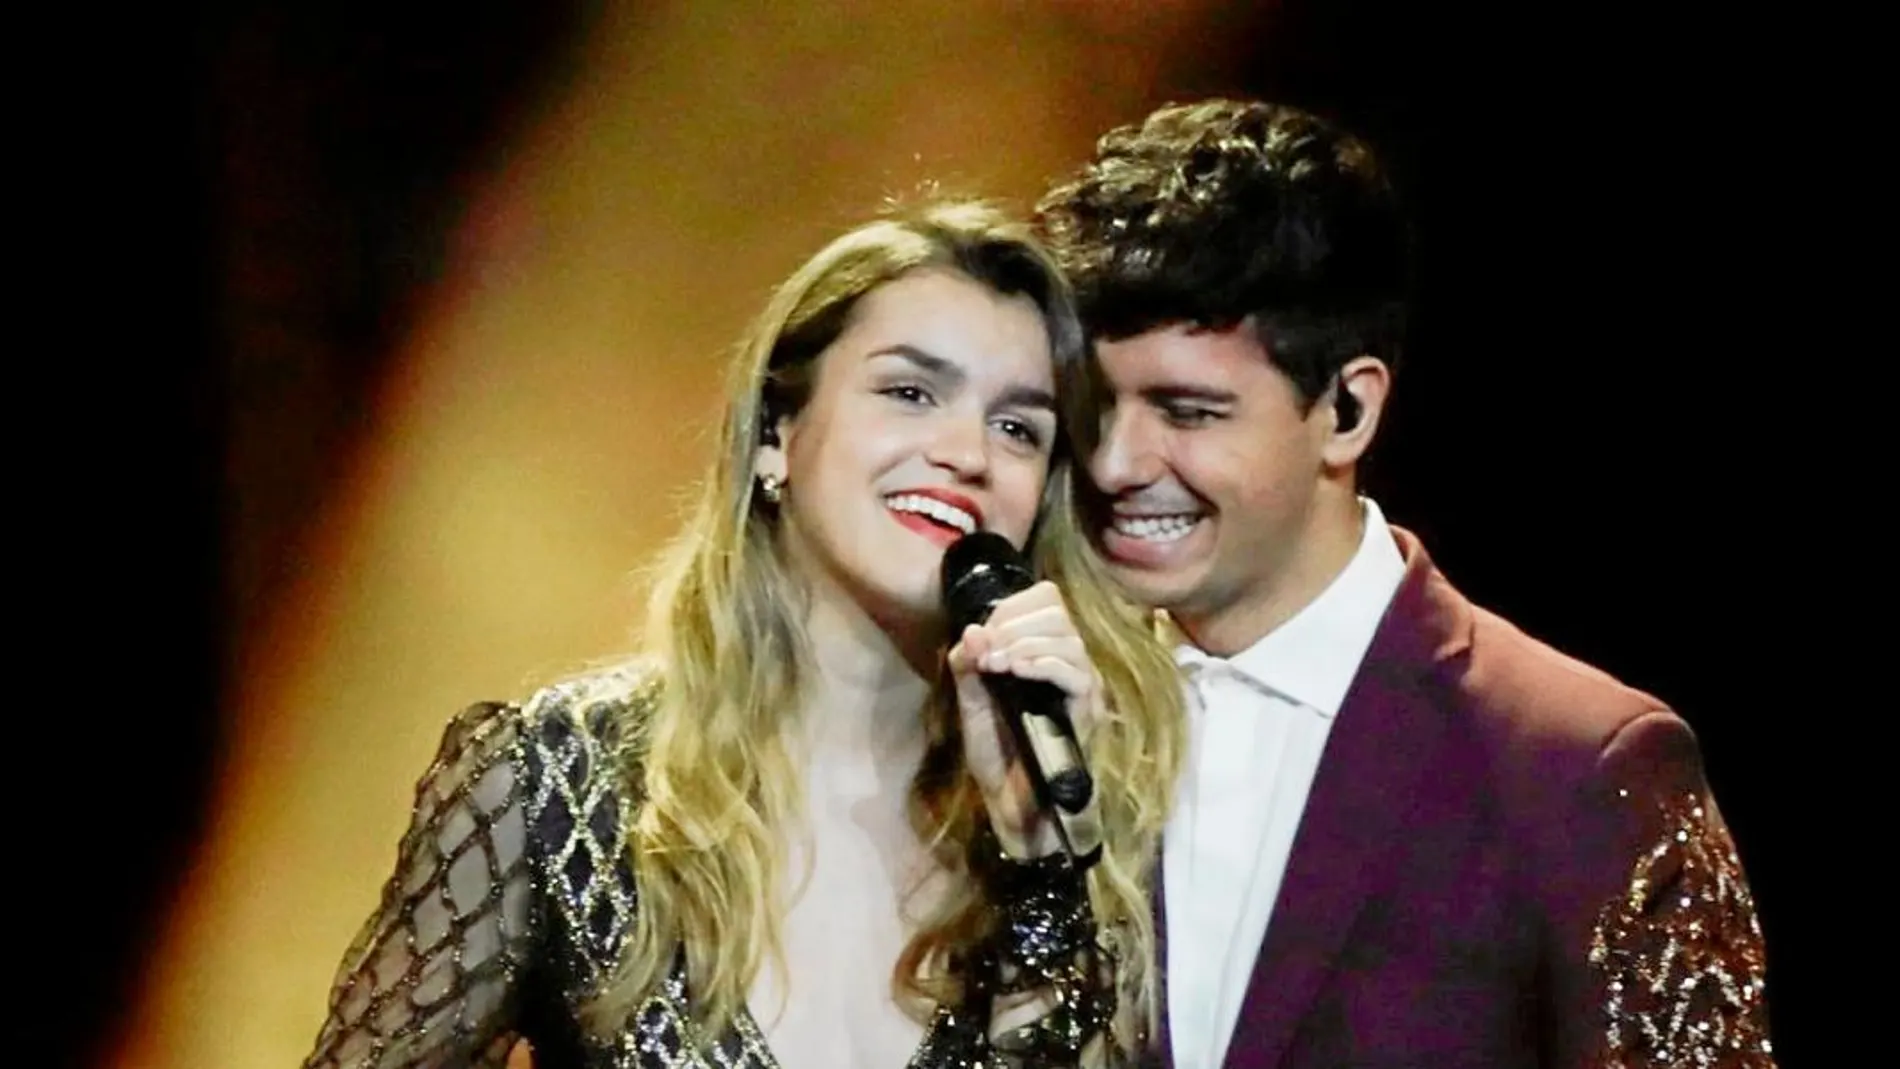 Alfred y Amaia interpretando "Tu Canción"en el festival de Eurovisión 2018 / Reuters